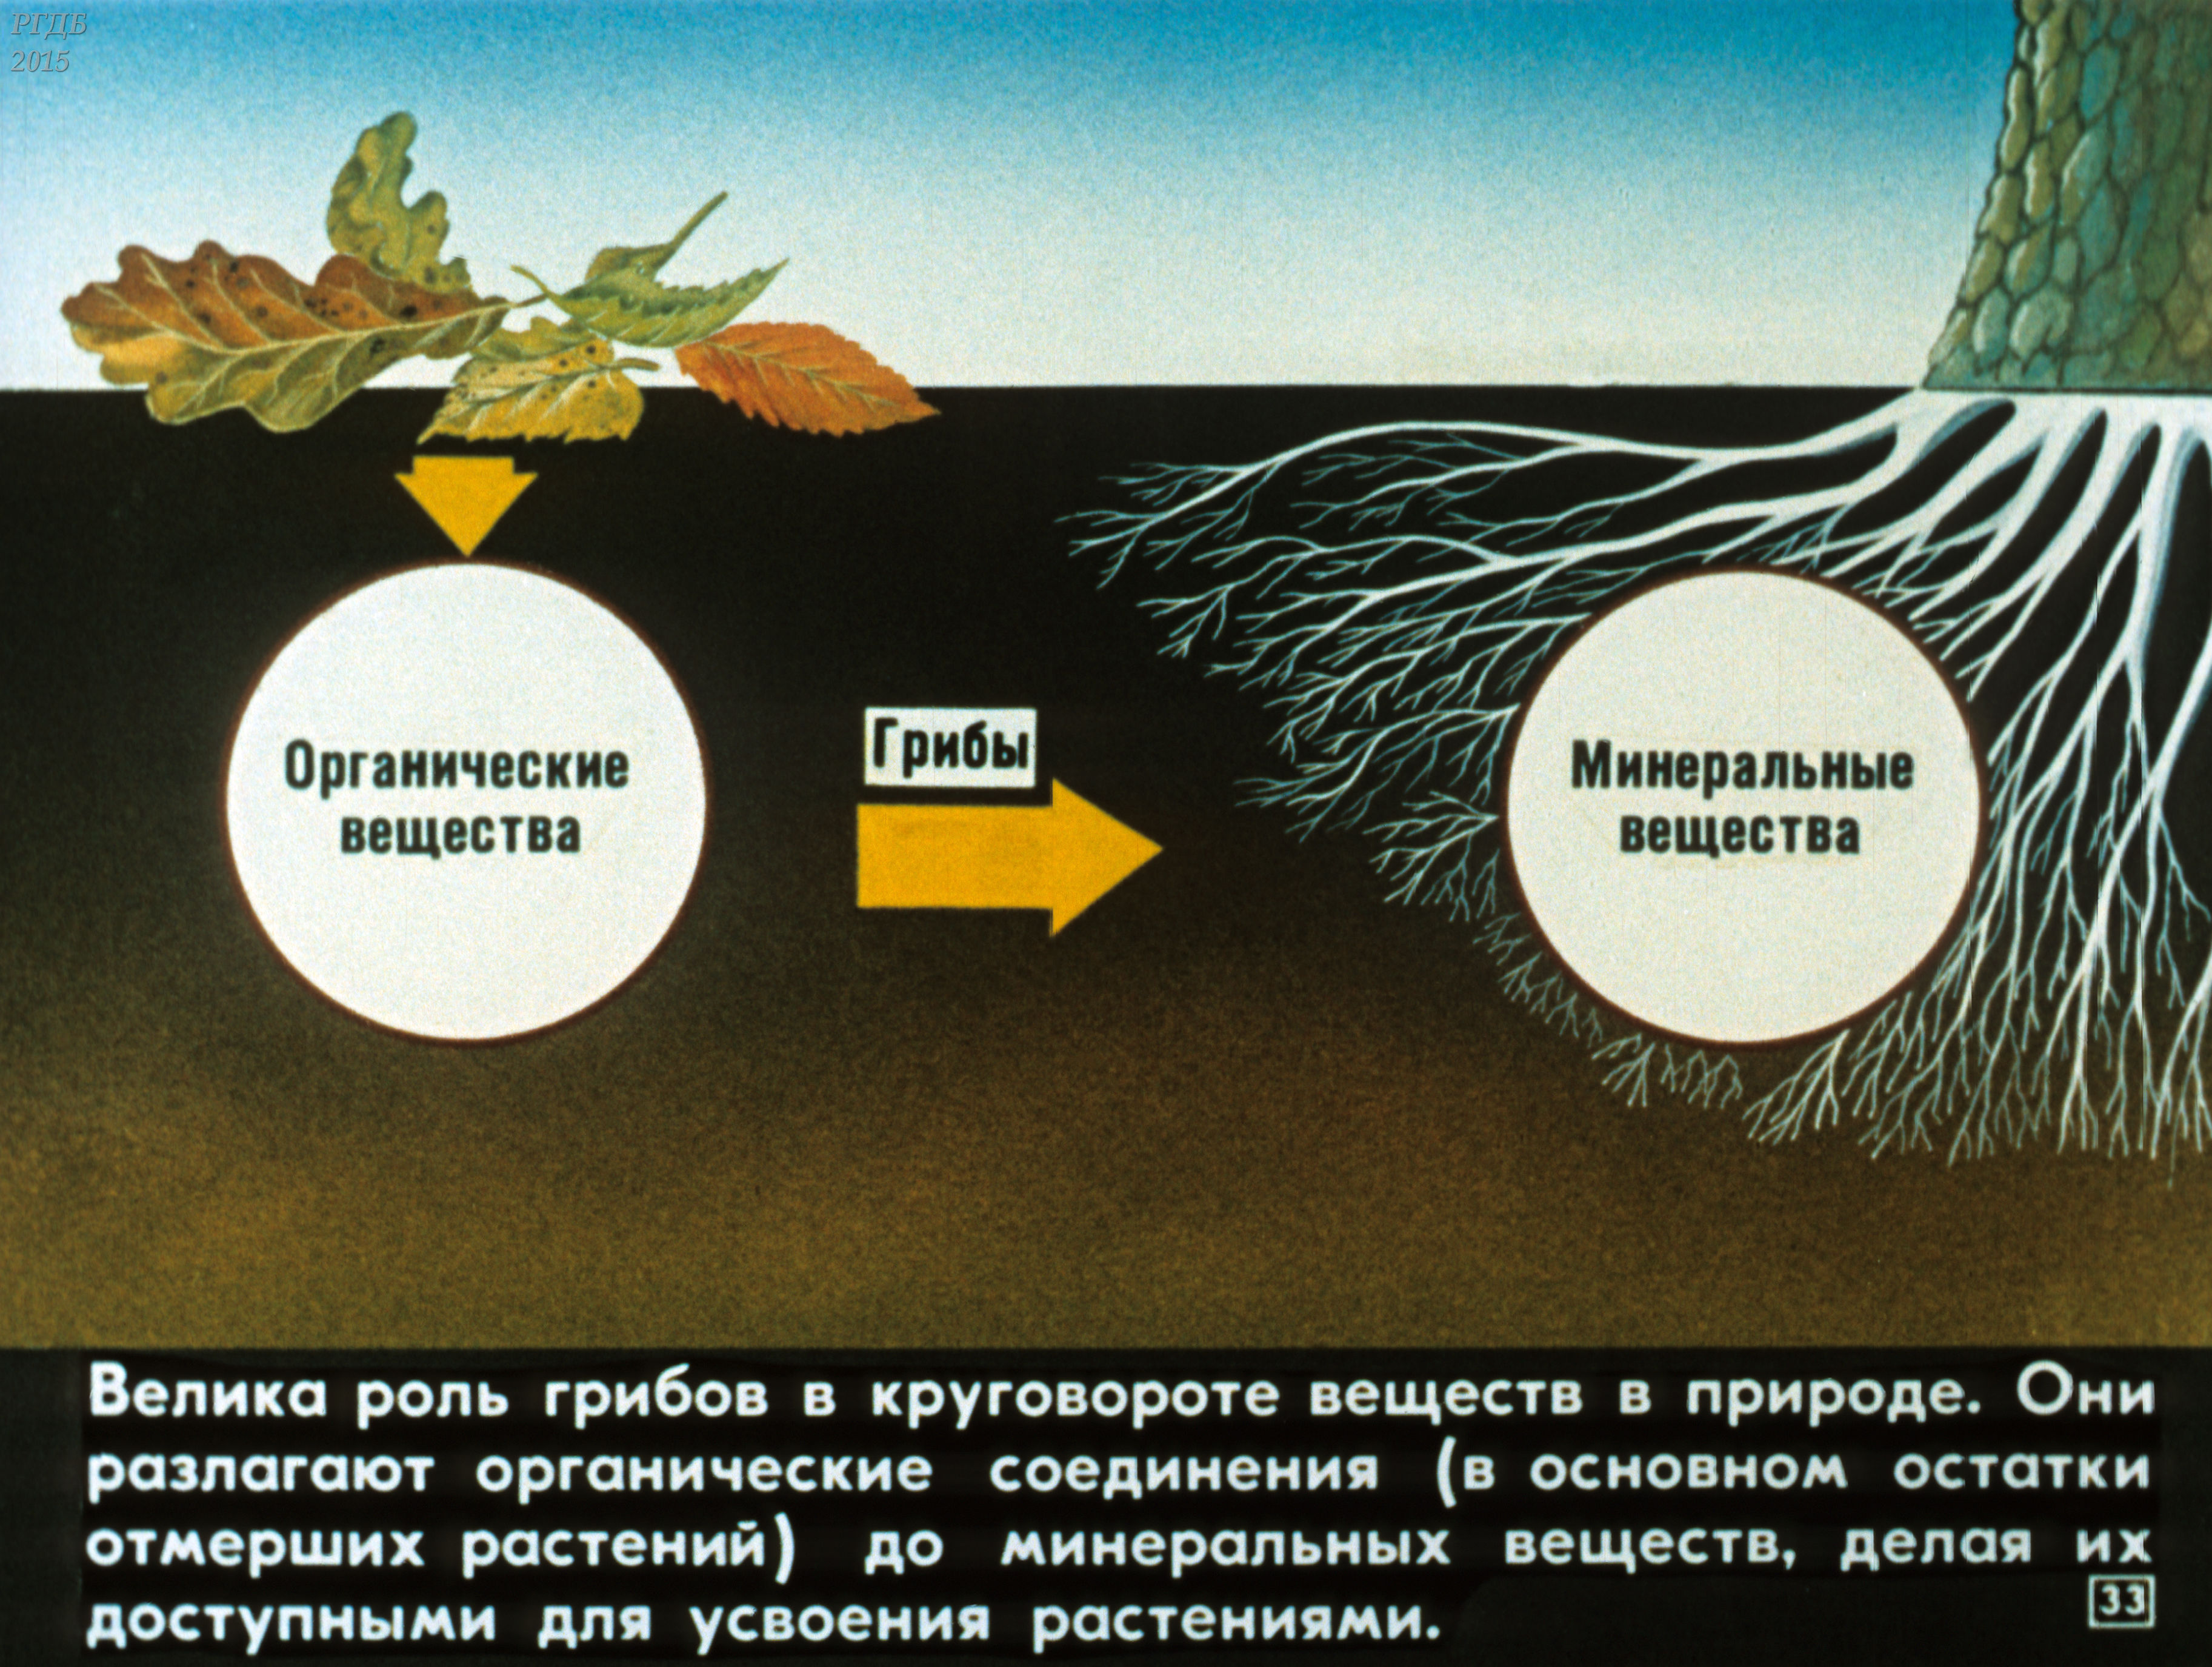 Бактерии грибы в круговороте веществ выполняют роль. Участие грибов в круговороте веществ. Роль грибов в круговороте веществ. Грибы участвуют в круговороте веществ. Роль грибов в круговороте веществ в природе.